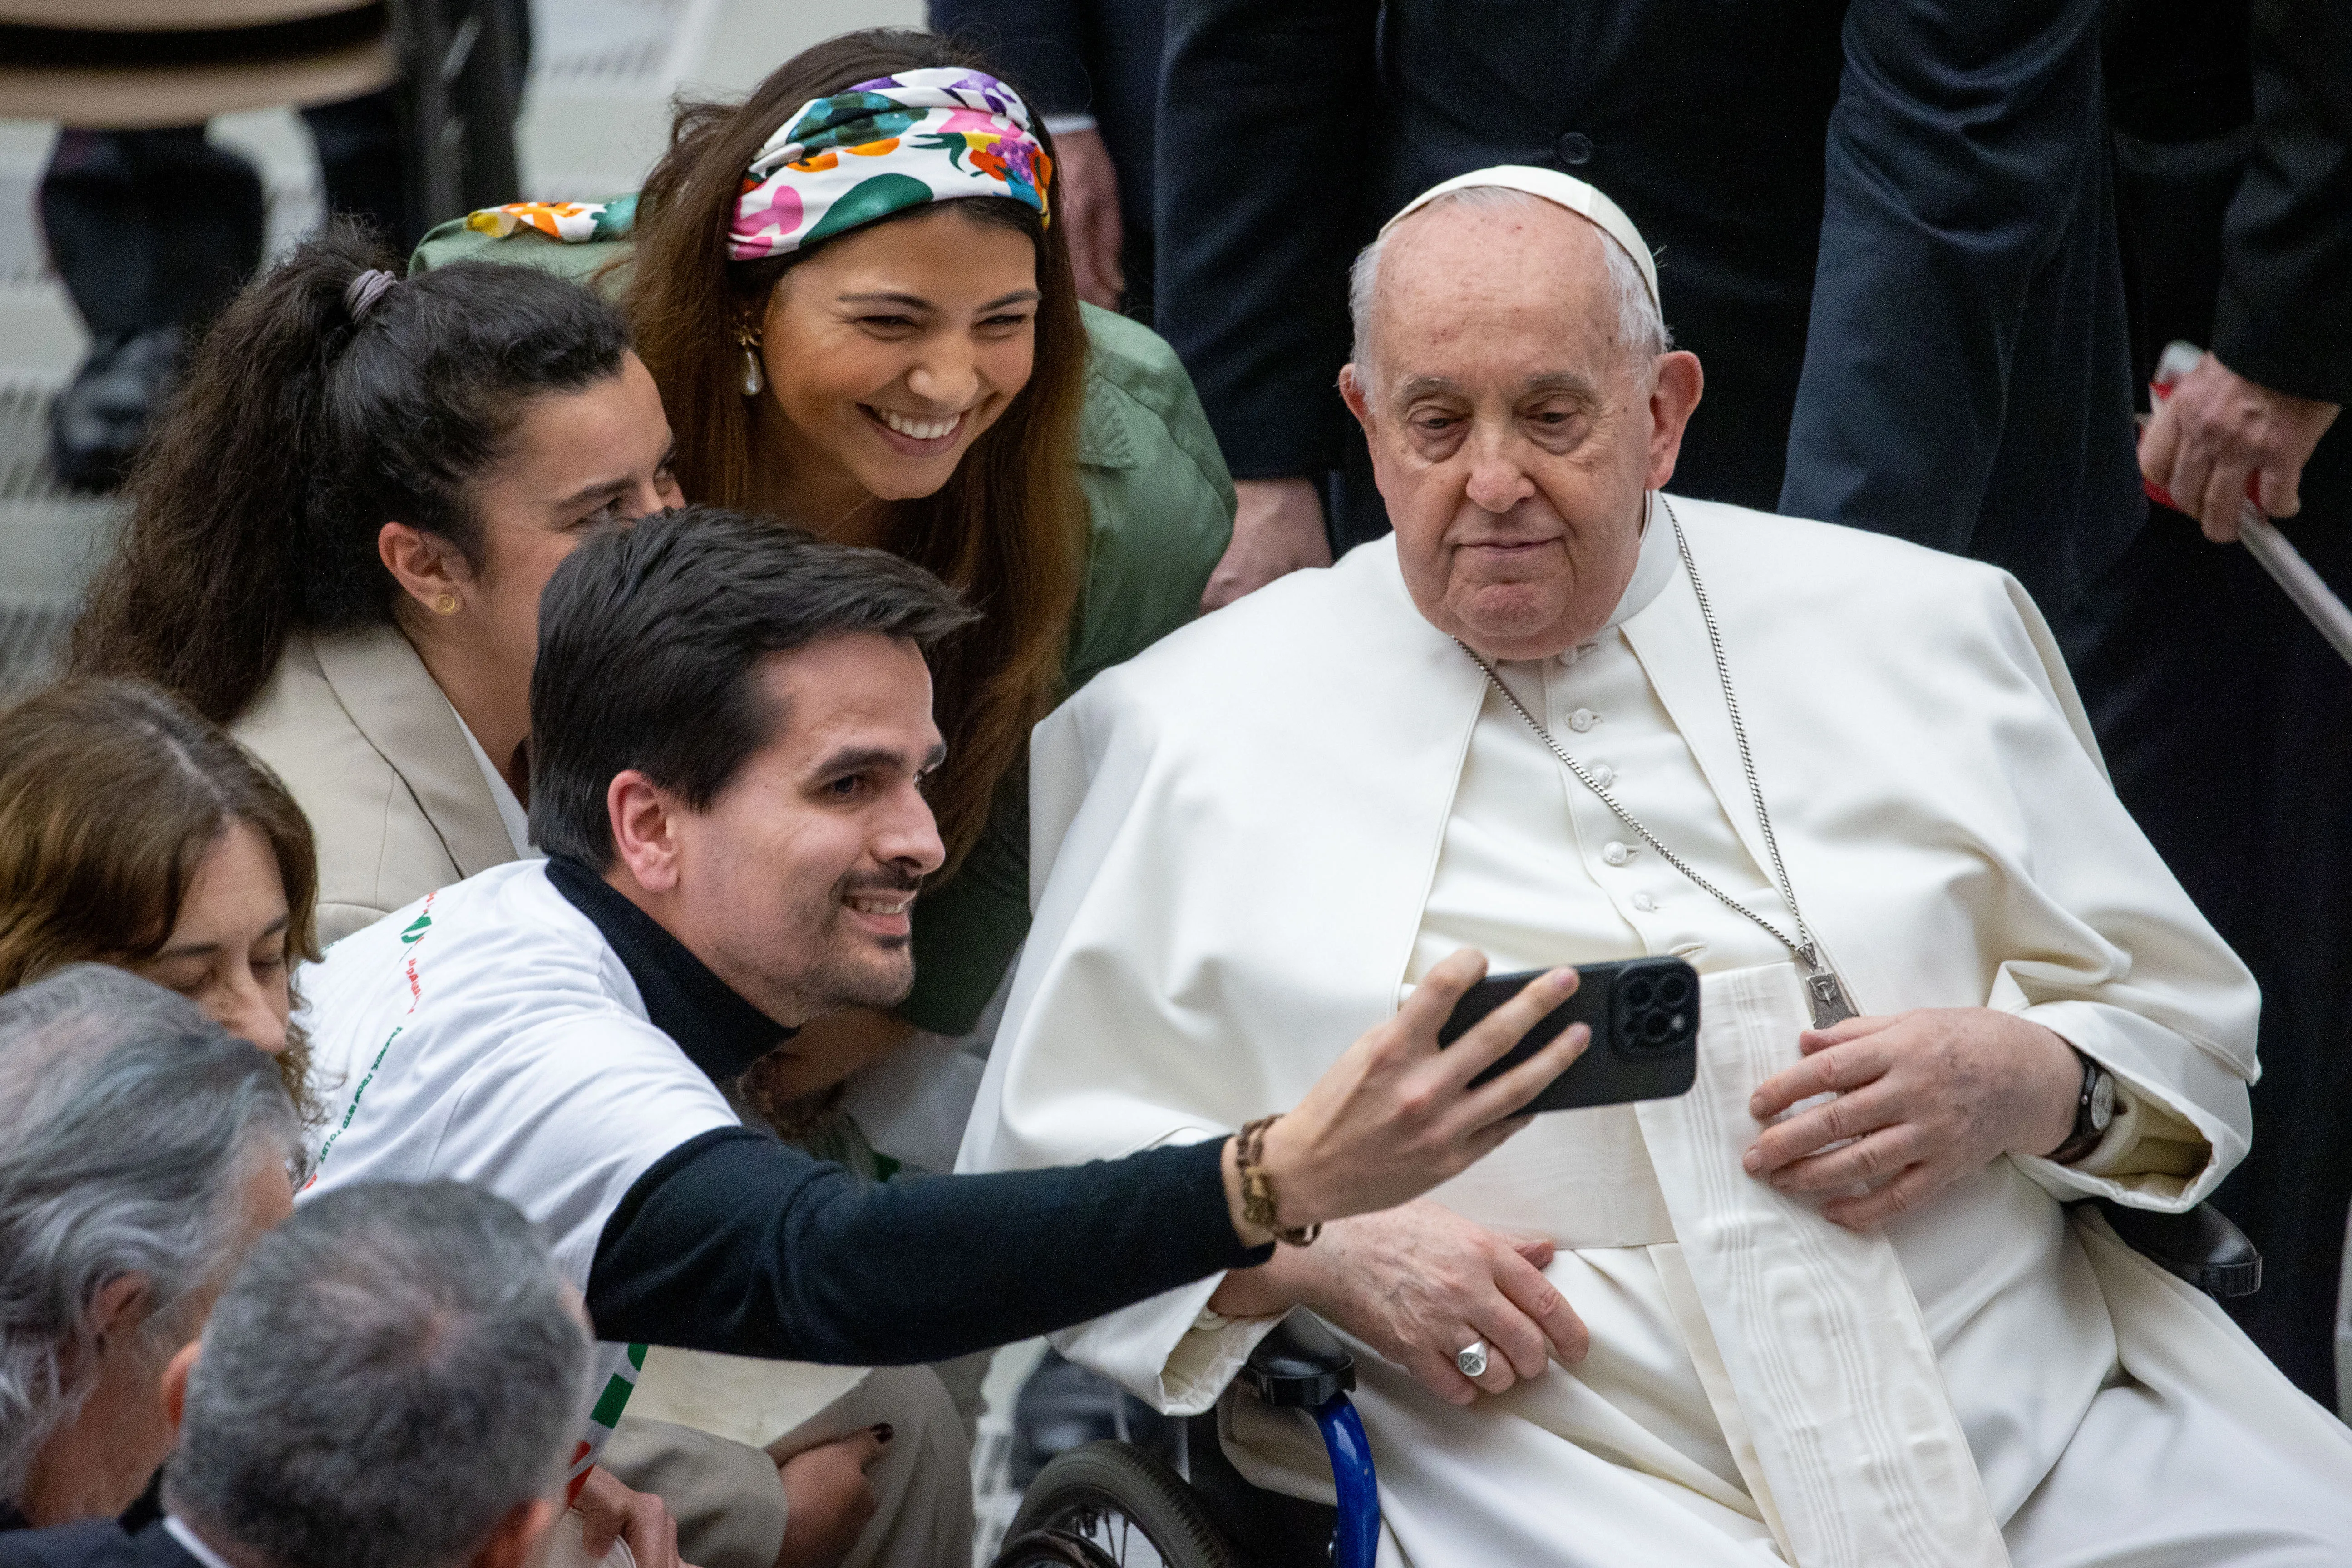 El Papa Francisco se toma una foto junto a varios jóvenes durante una audiencia.?w=200&h=150